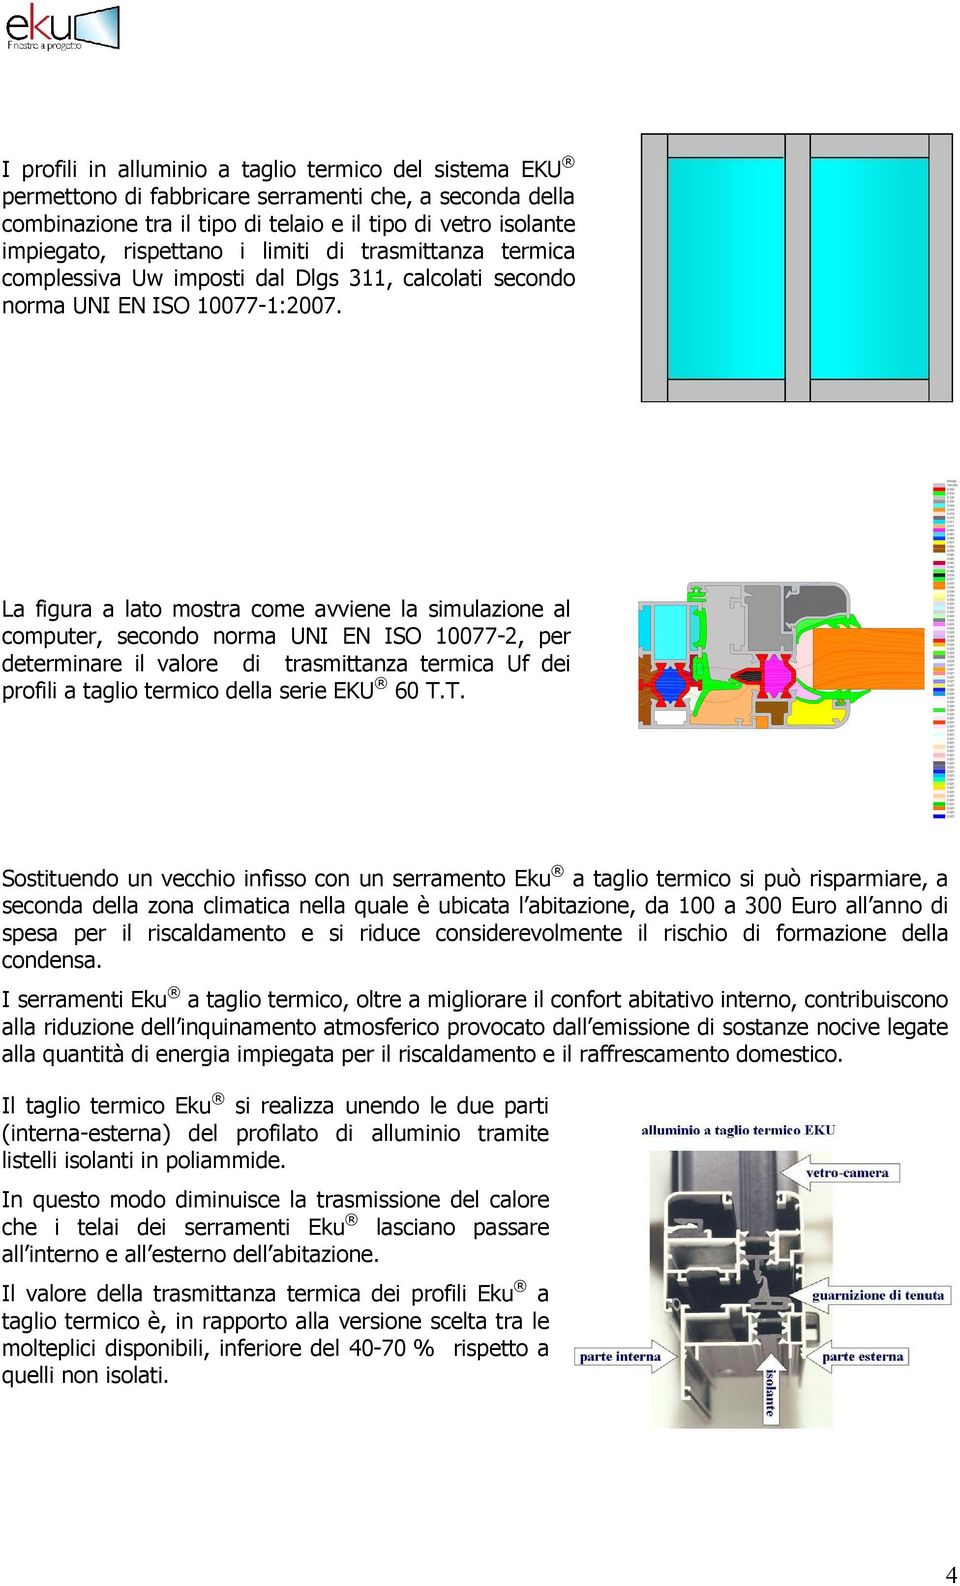 La figura a lato mostra come avviene la simulazione al computer, secondo norma UNI EN ISO 10077-2, per determinare il valore di trasmittanza termica Uf dei profili a taglio termico della serie EKU 60